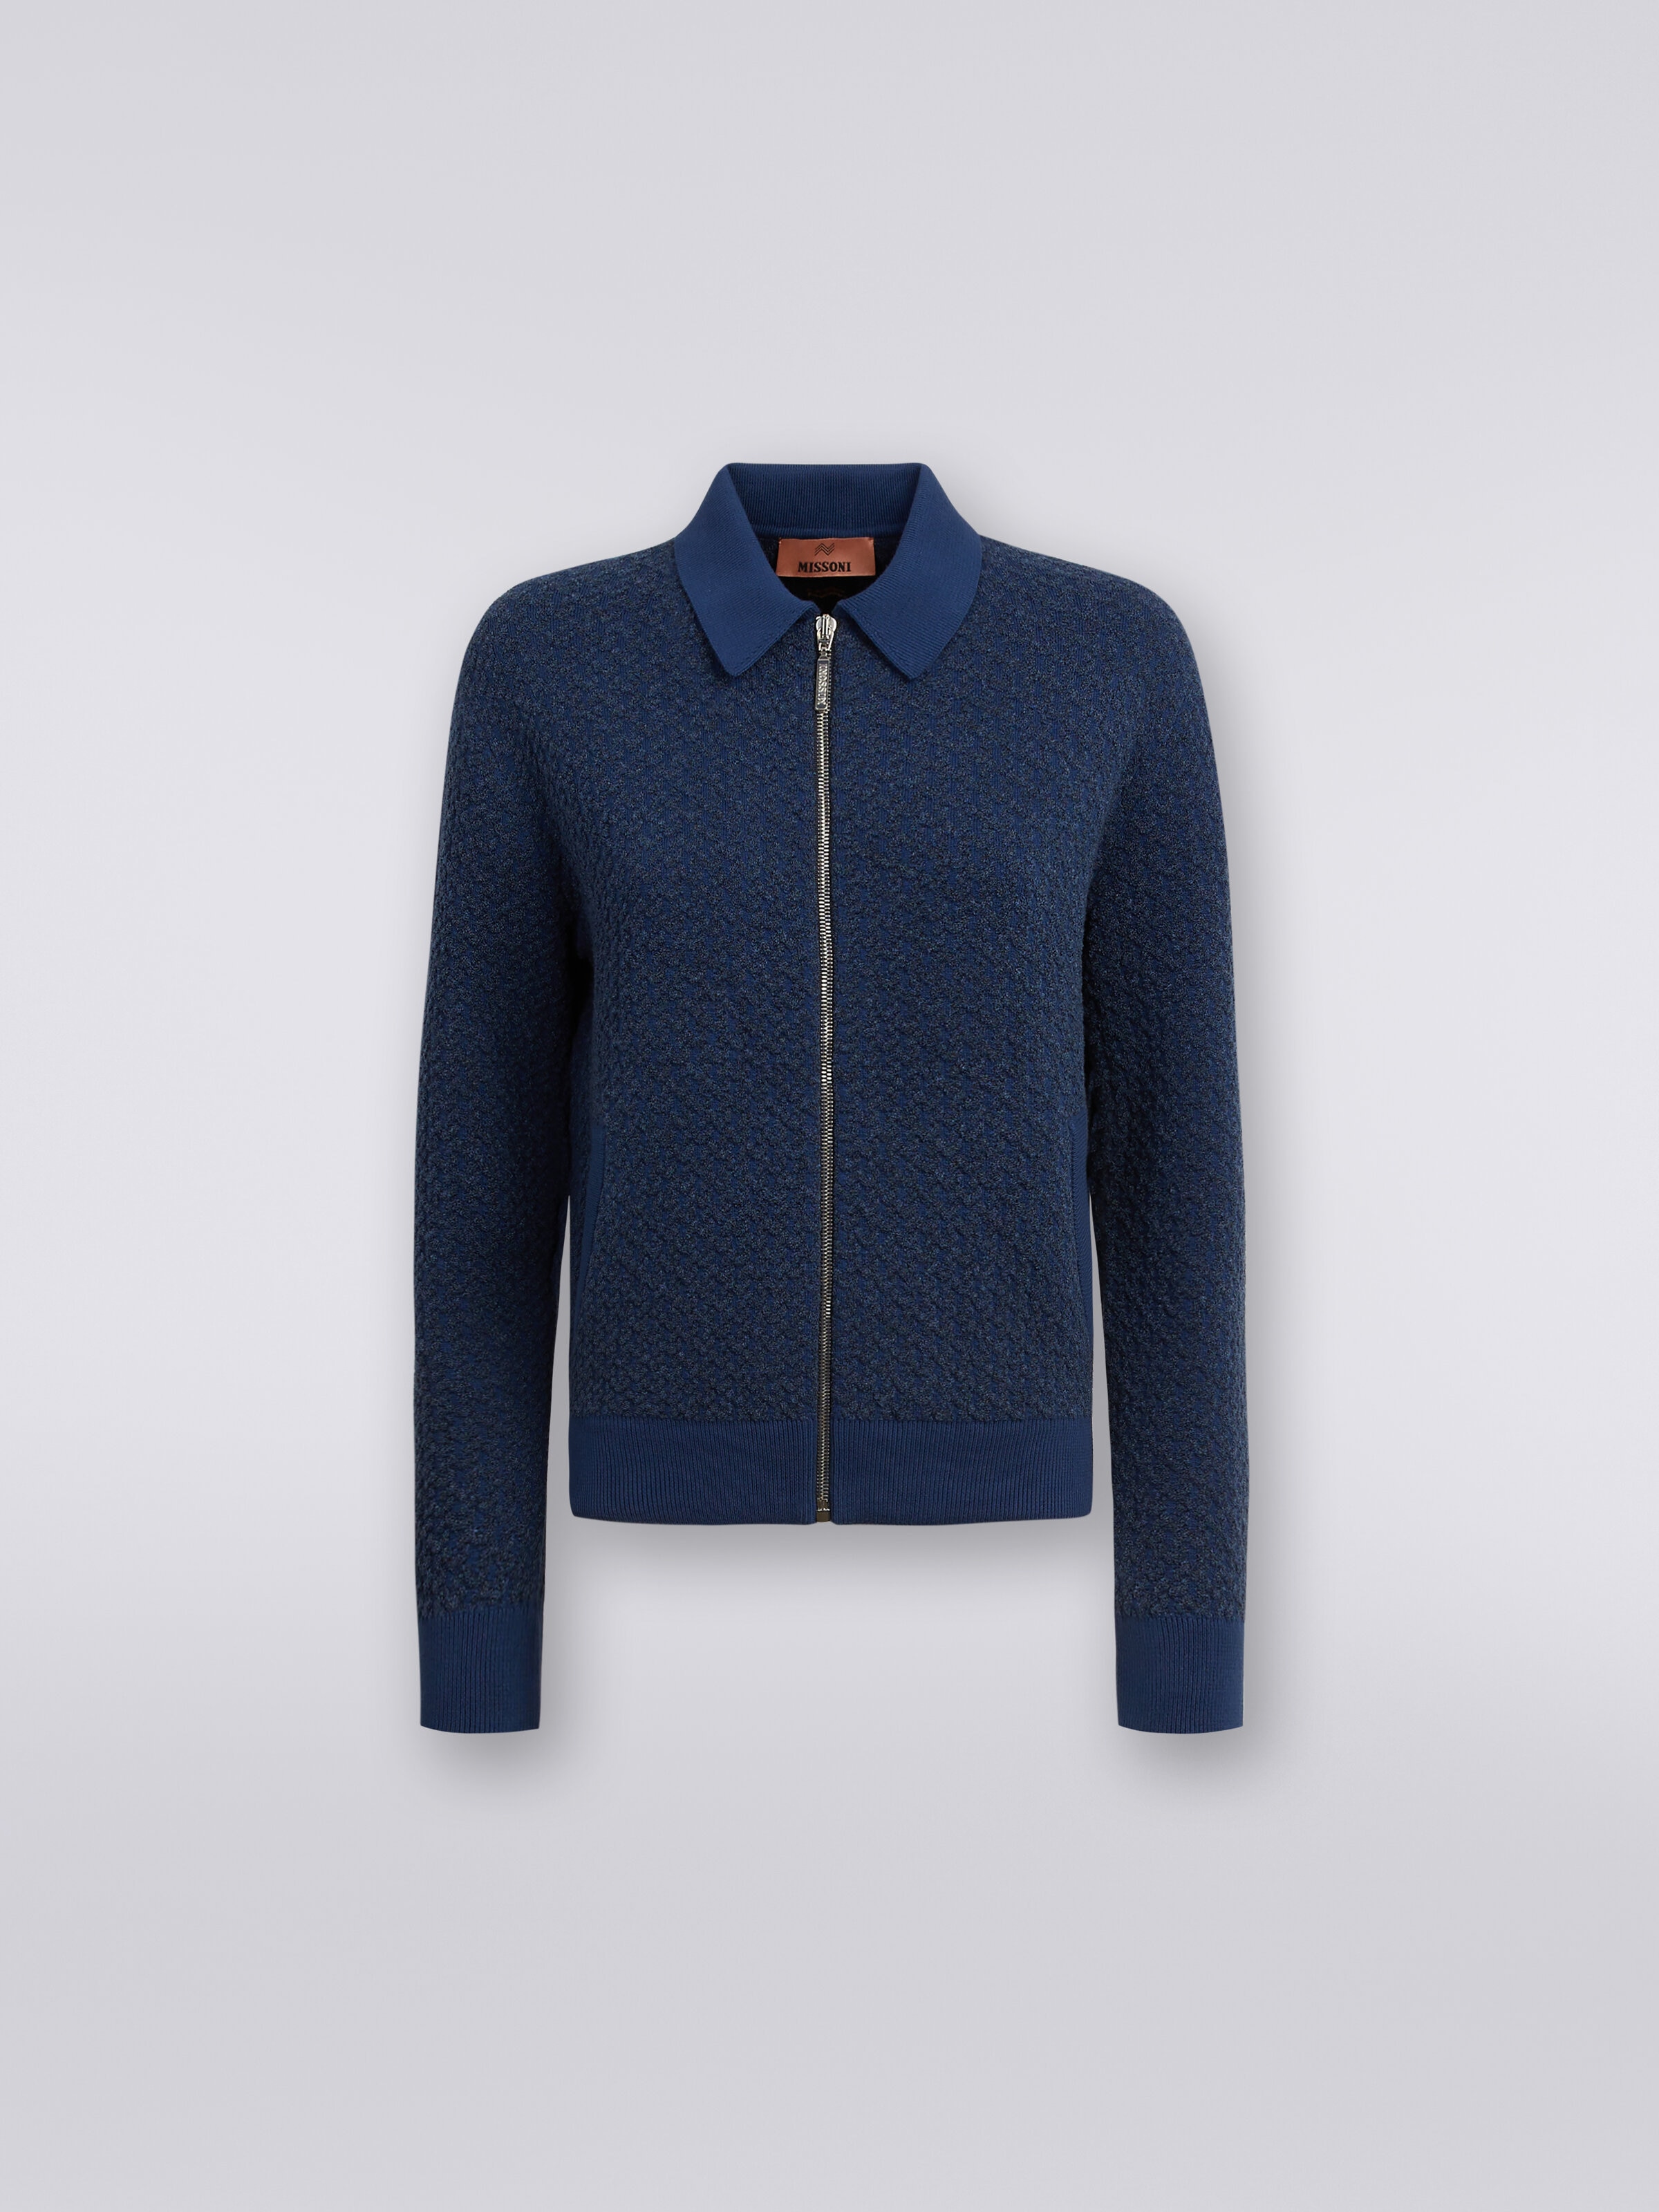 Cotton and nylon zipped bomber jacket, Blue - 0